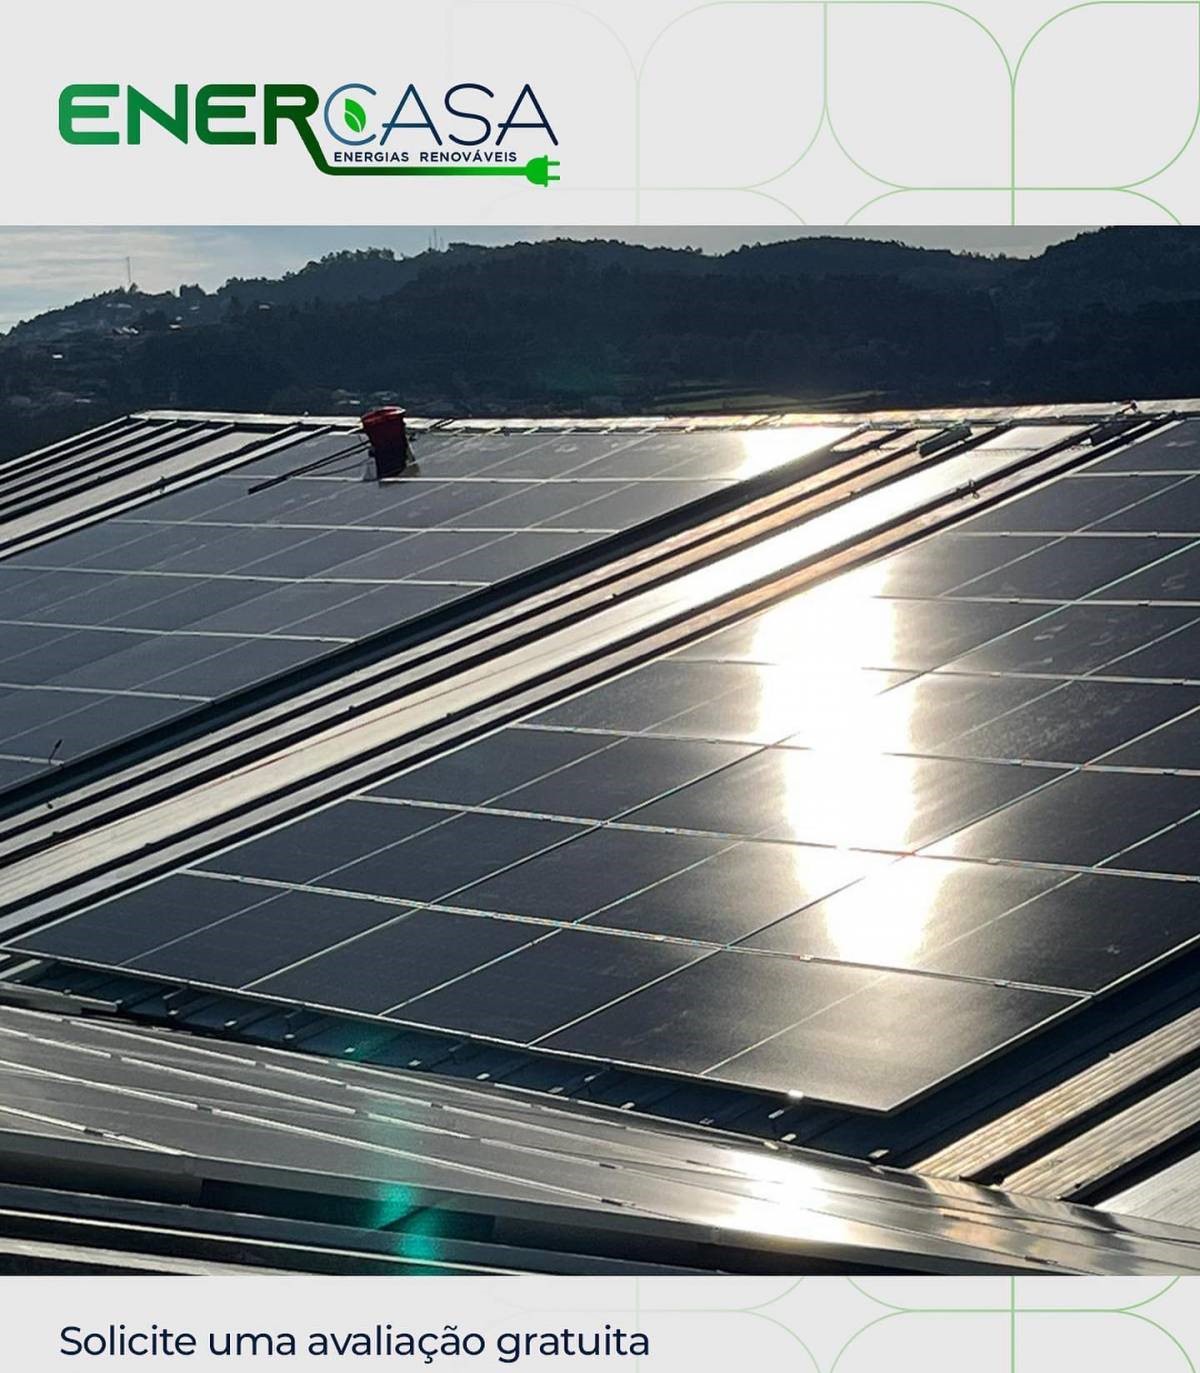 ENERCASA - Energias Renováveis e Climatização, Lda - Braga - Instalação de Painel Solar